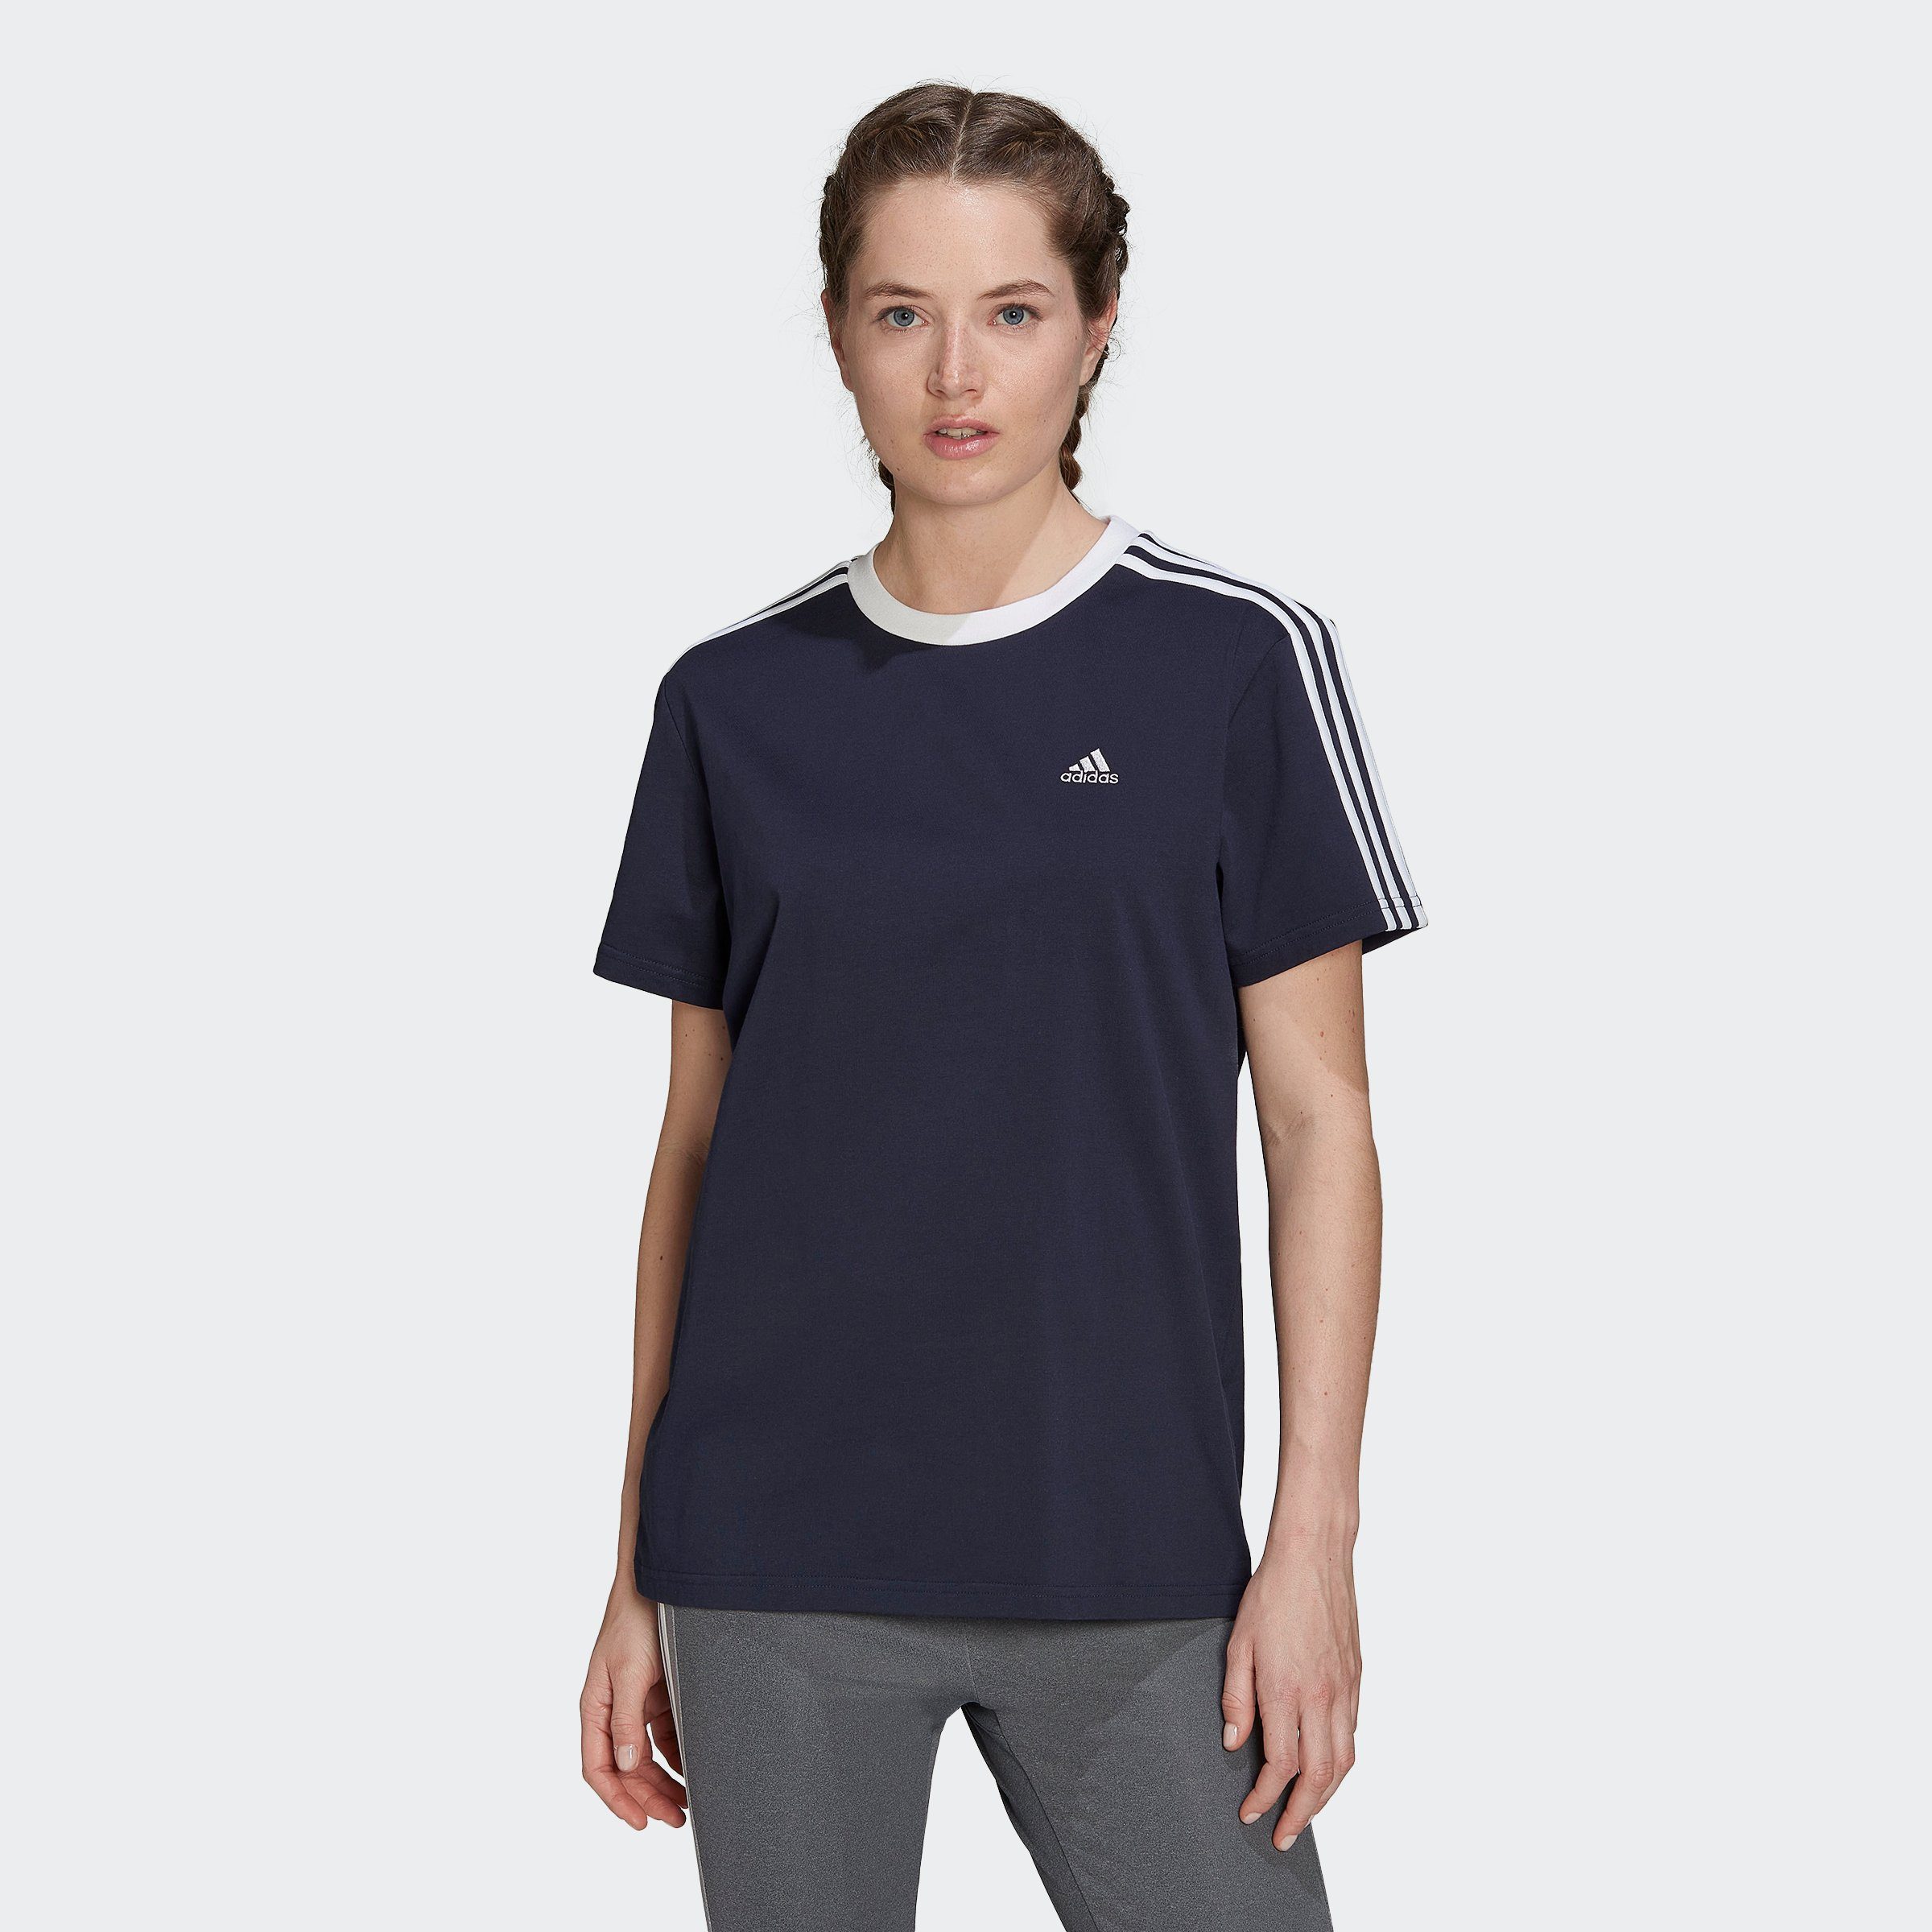 Blaue Sportshirts für Damen online kaufen | OTTO